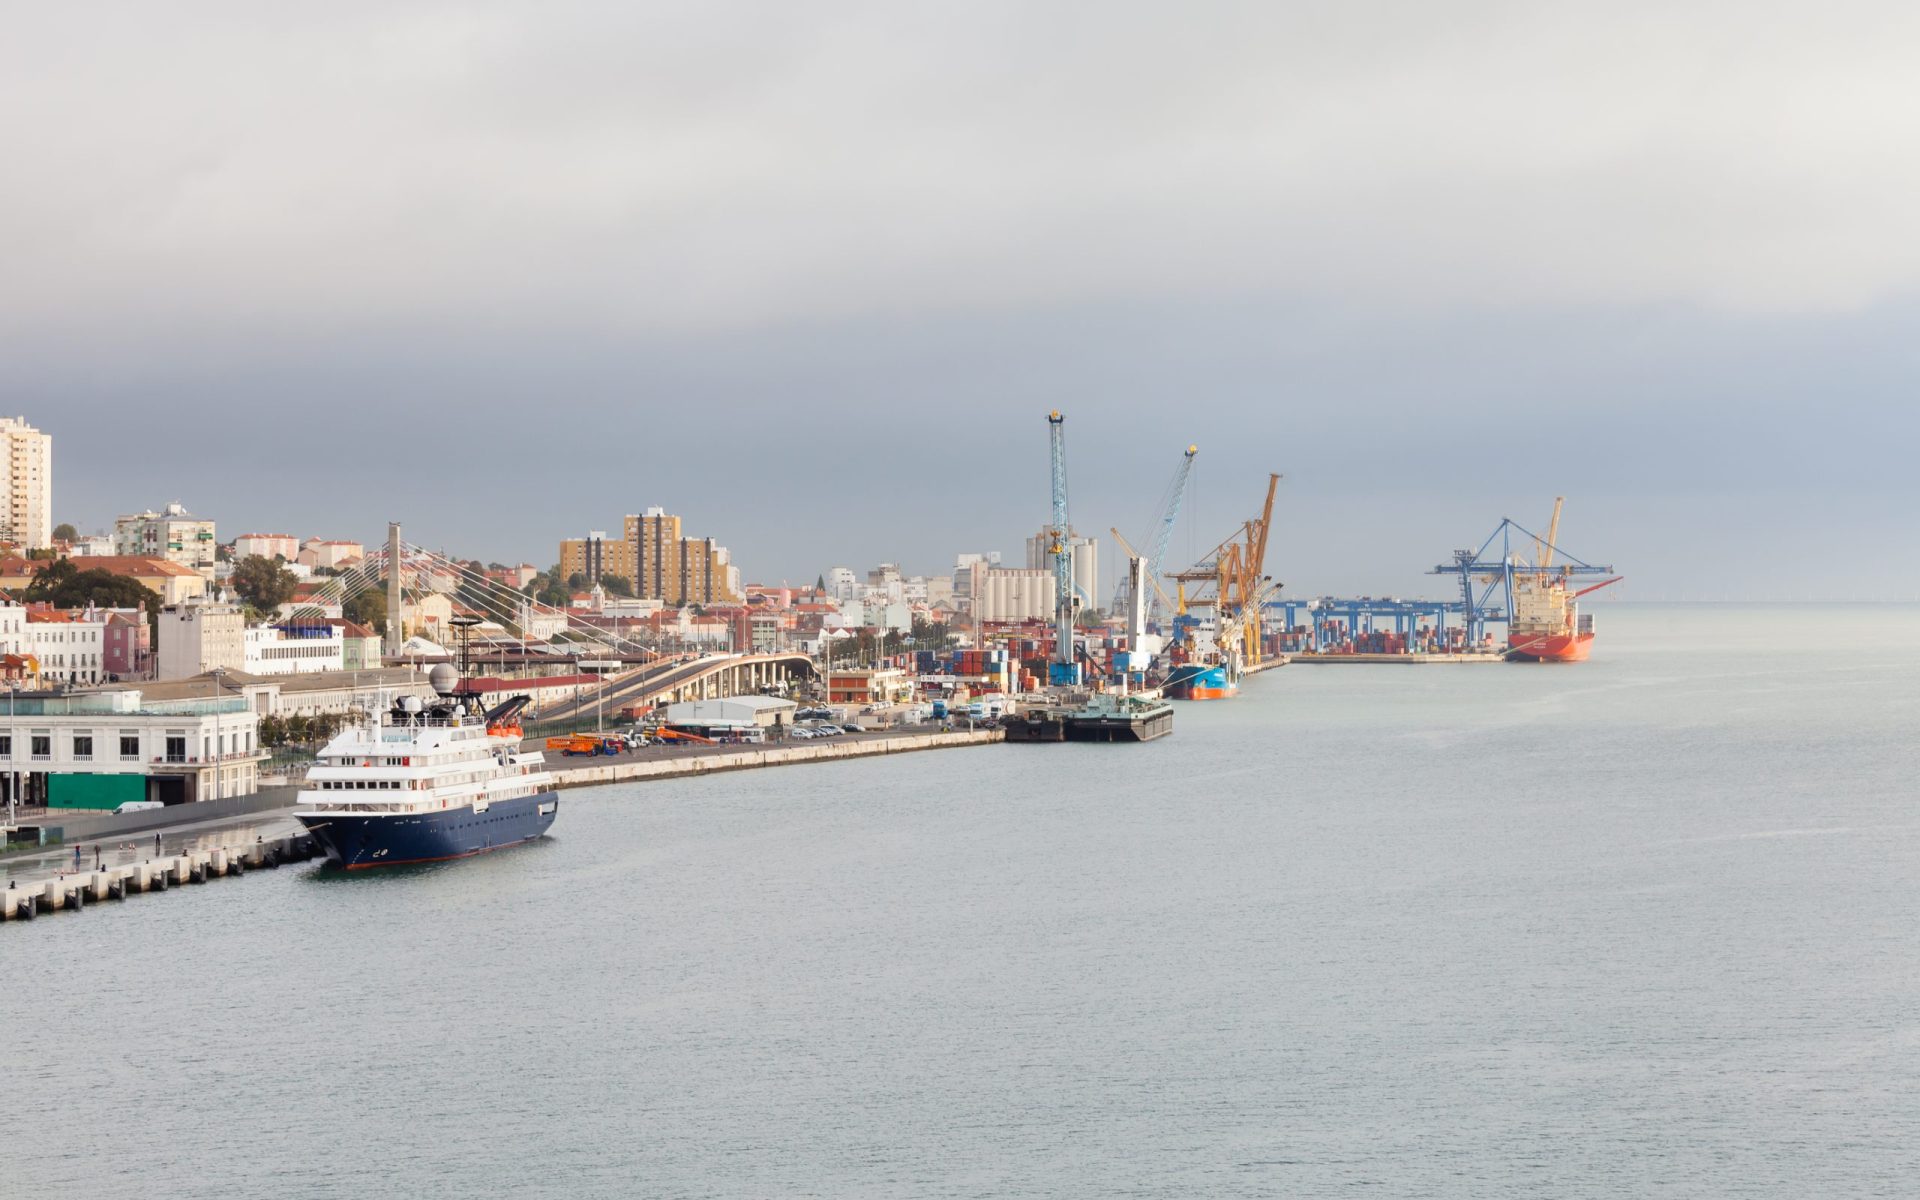 Três migrantes clandestinos encontrados a bordo de cargueiro no porto de Lisboa